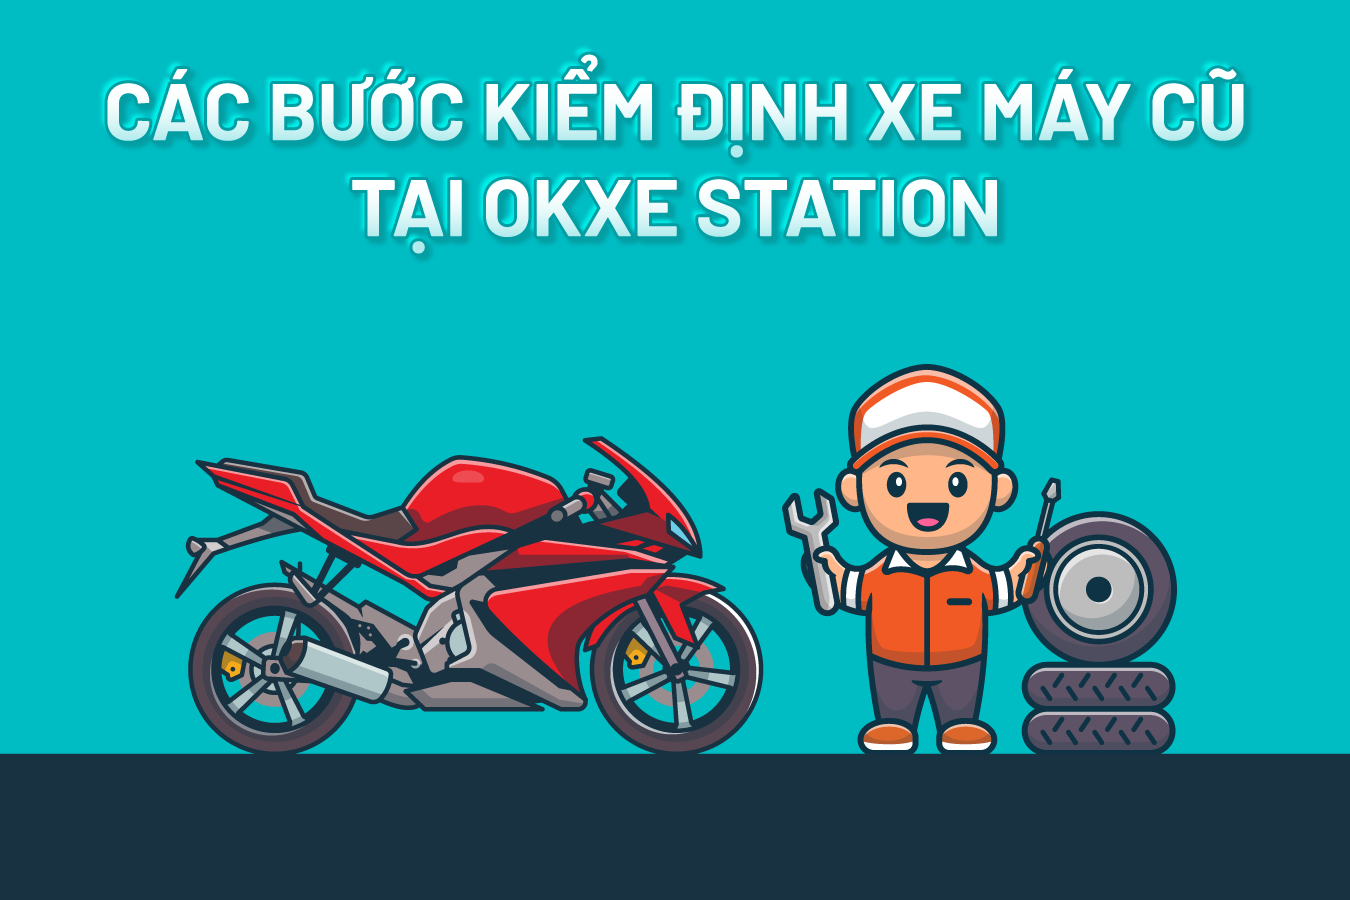 OKXE đạt 2 triệu lượt tải sau gần 2 năm ra mắt  Chuyện xe